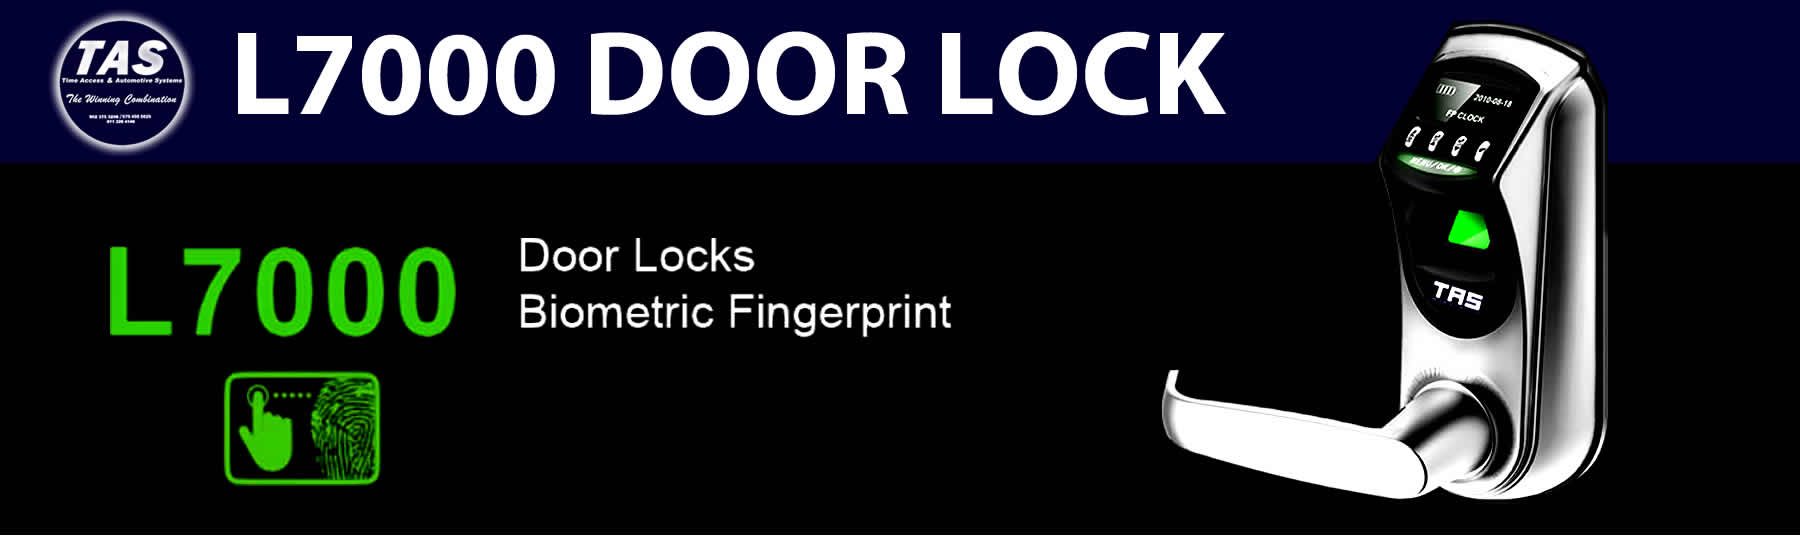 L7000 door locks banner